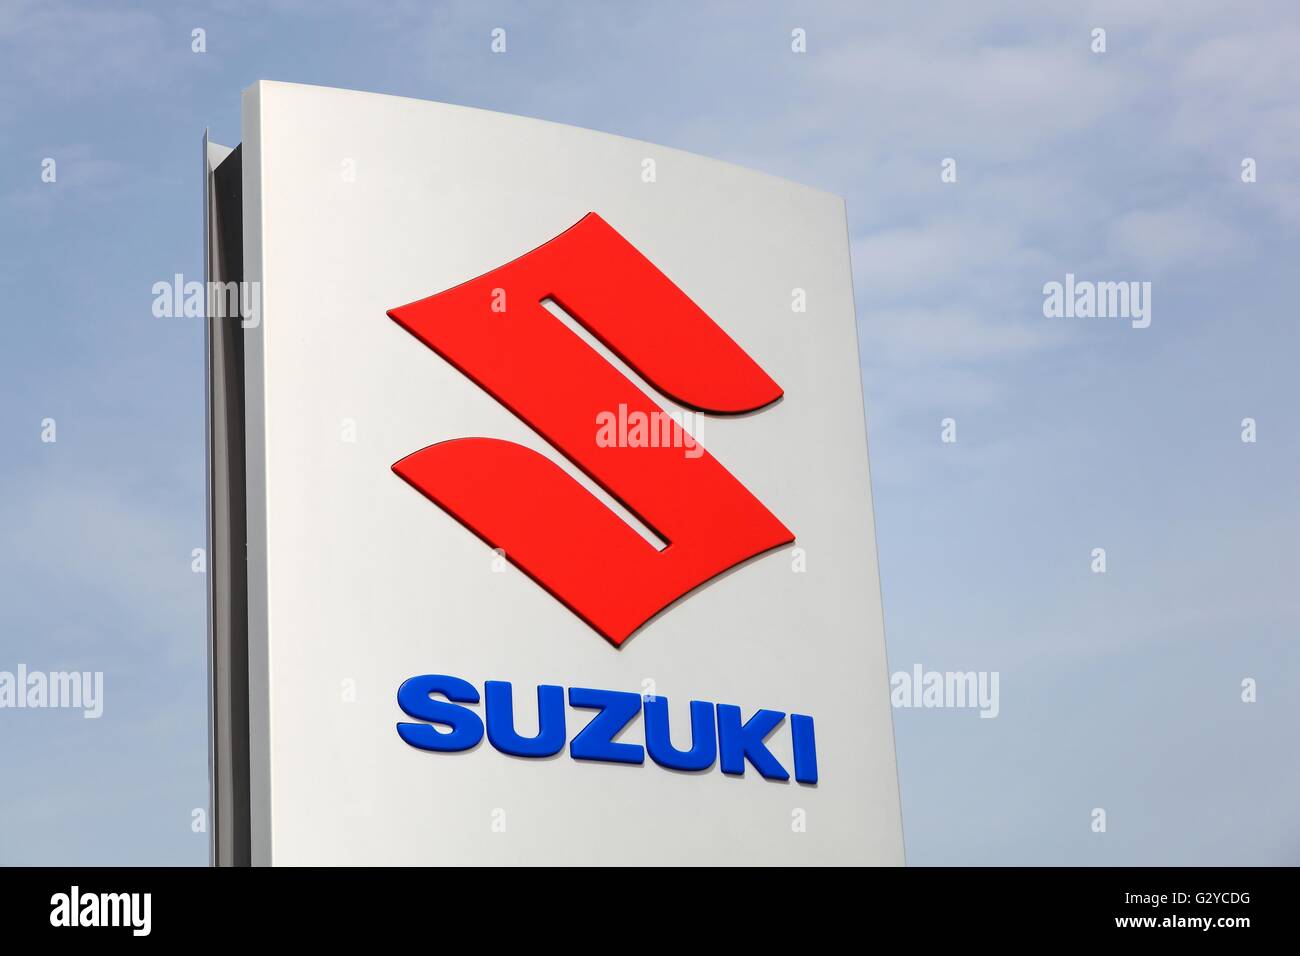 Suzuki logo on a panel Stock Photo